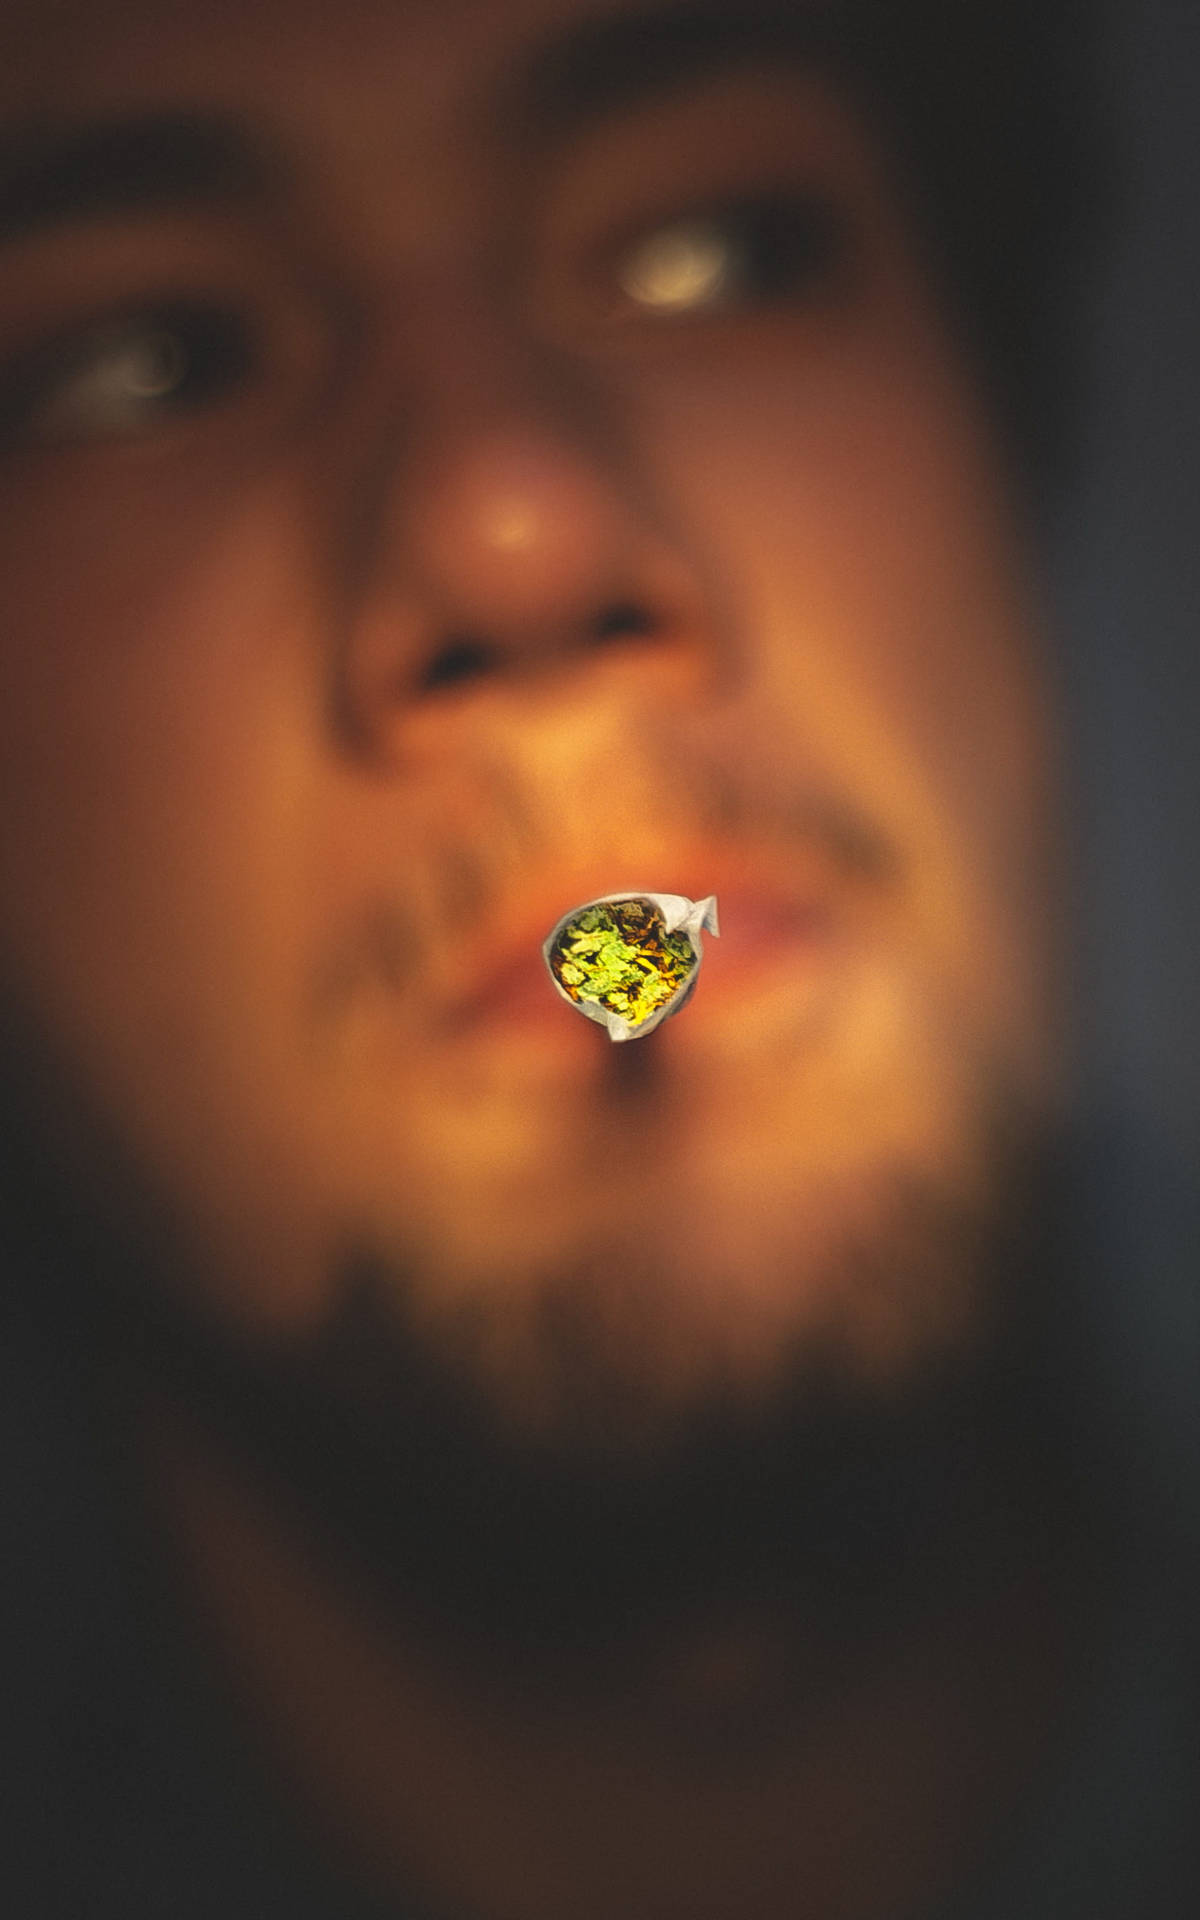 Man Smoking Weed Shot Background